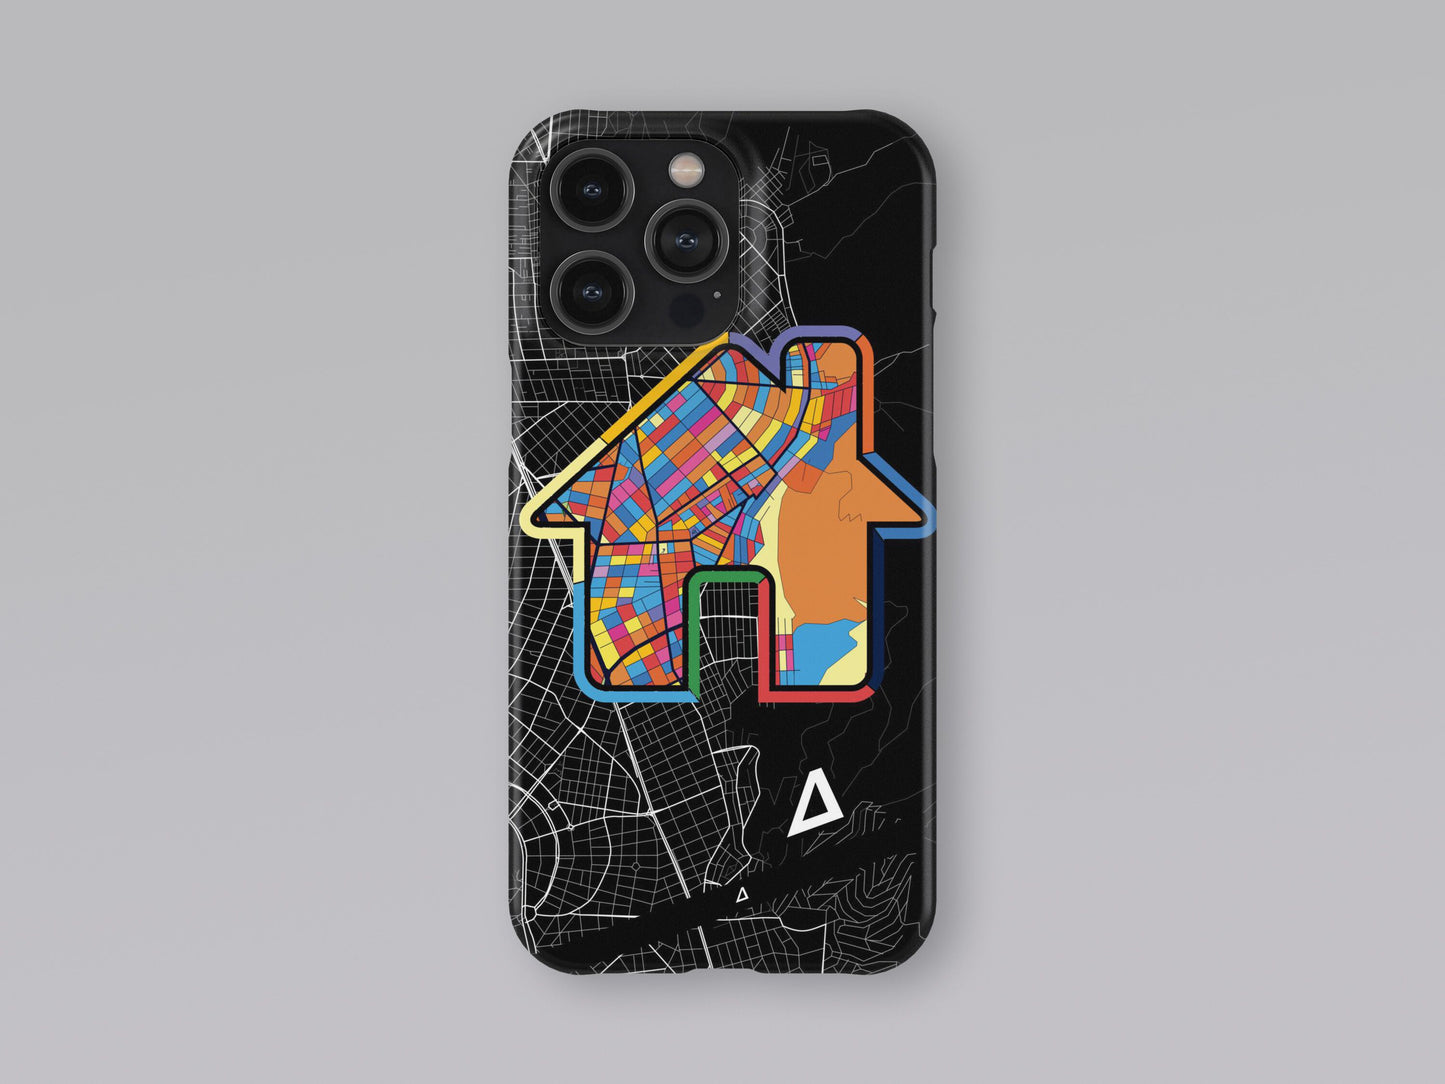 Γλυφαδα Ελλαδα slim phone case with colorful icon 3